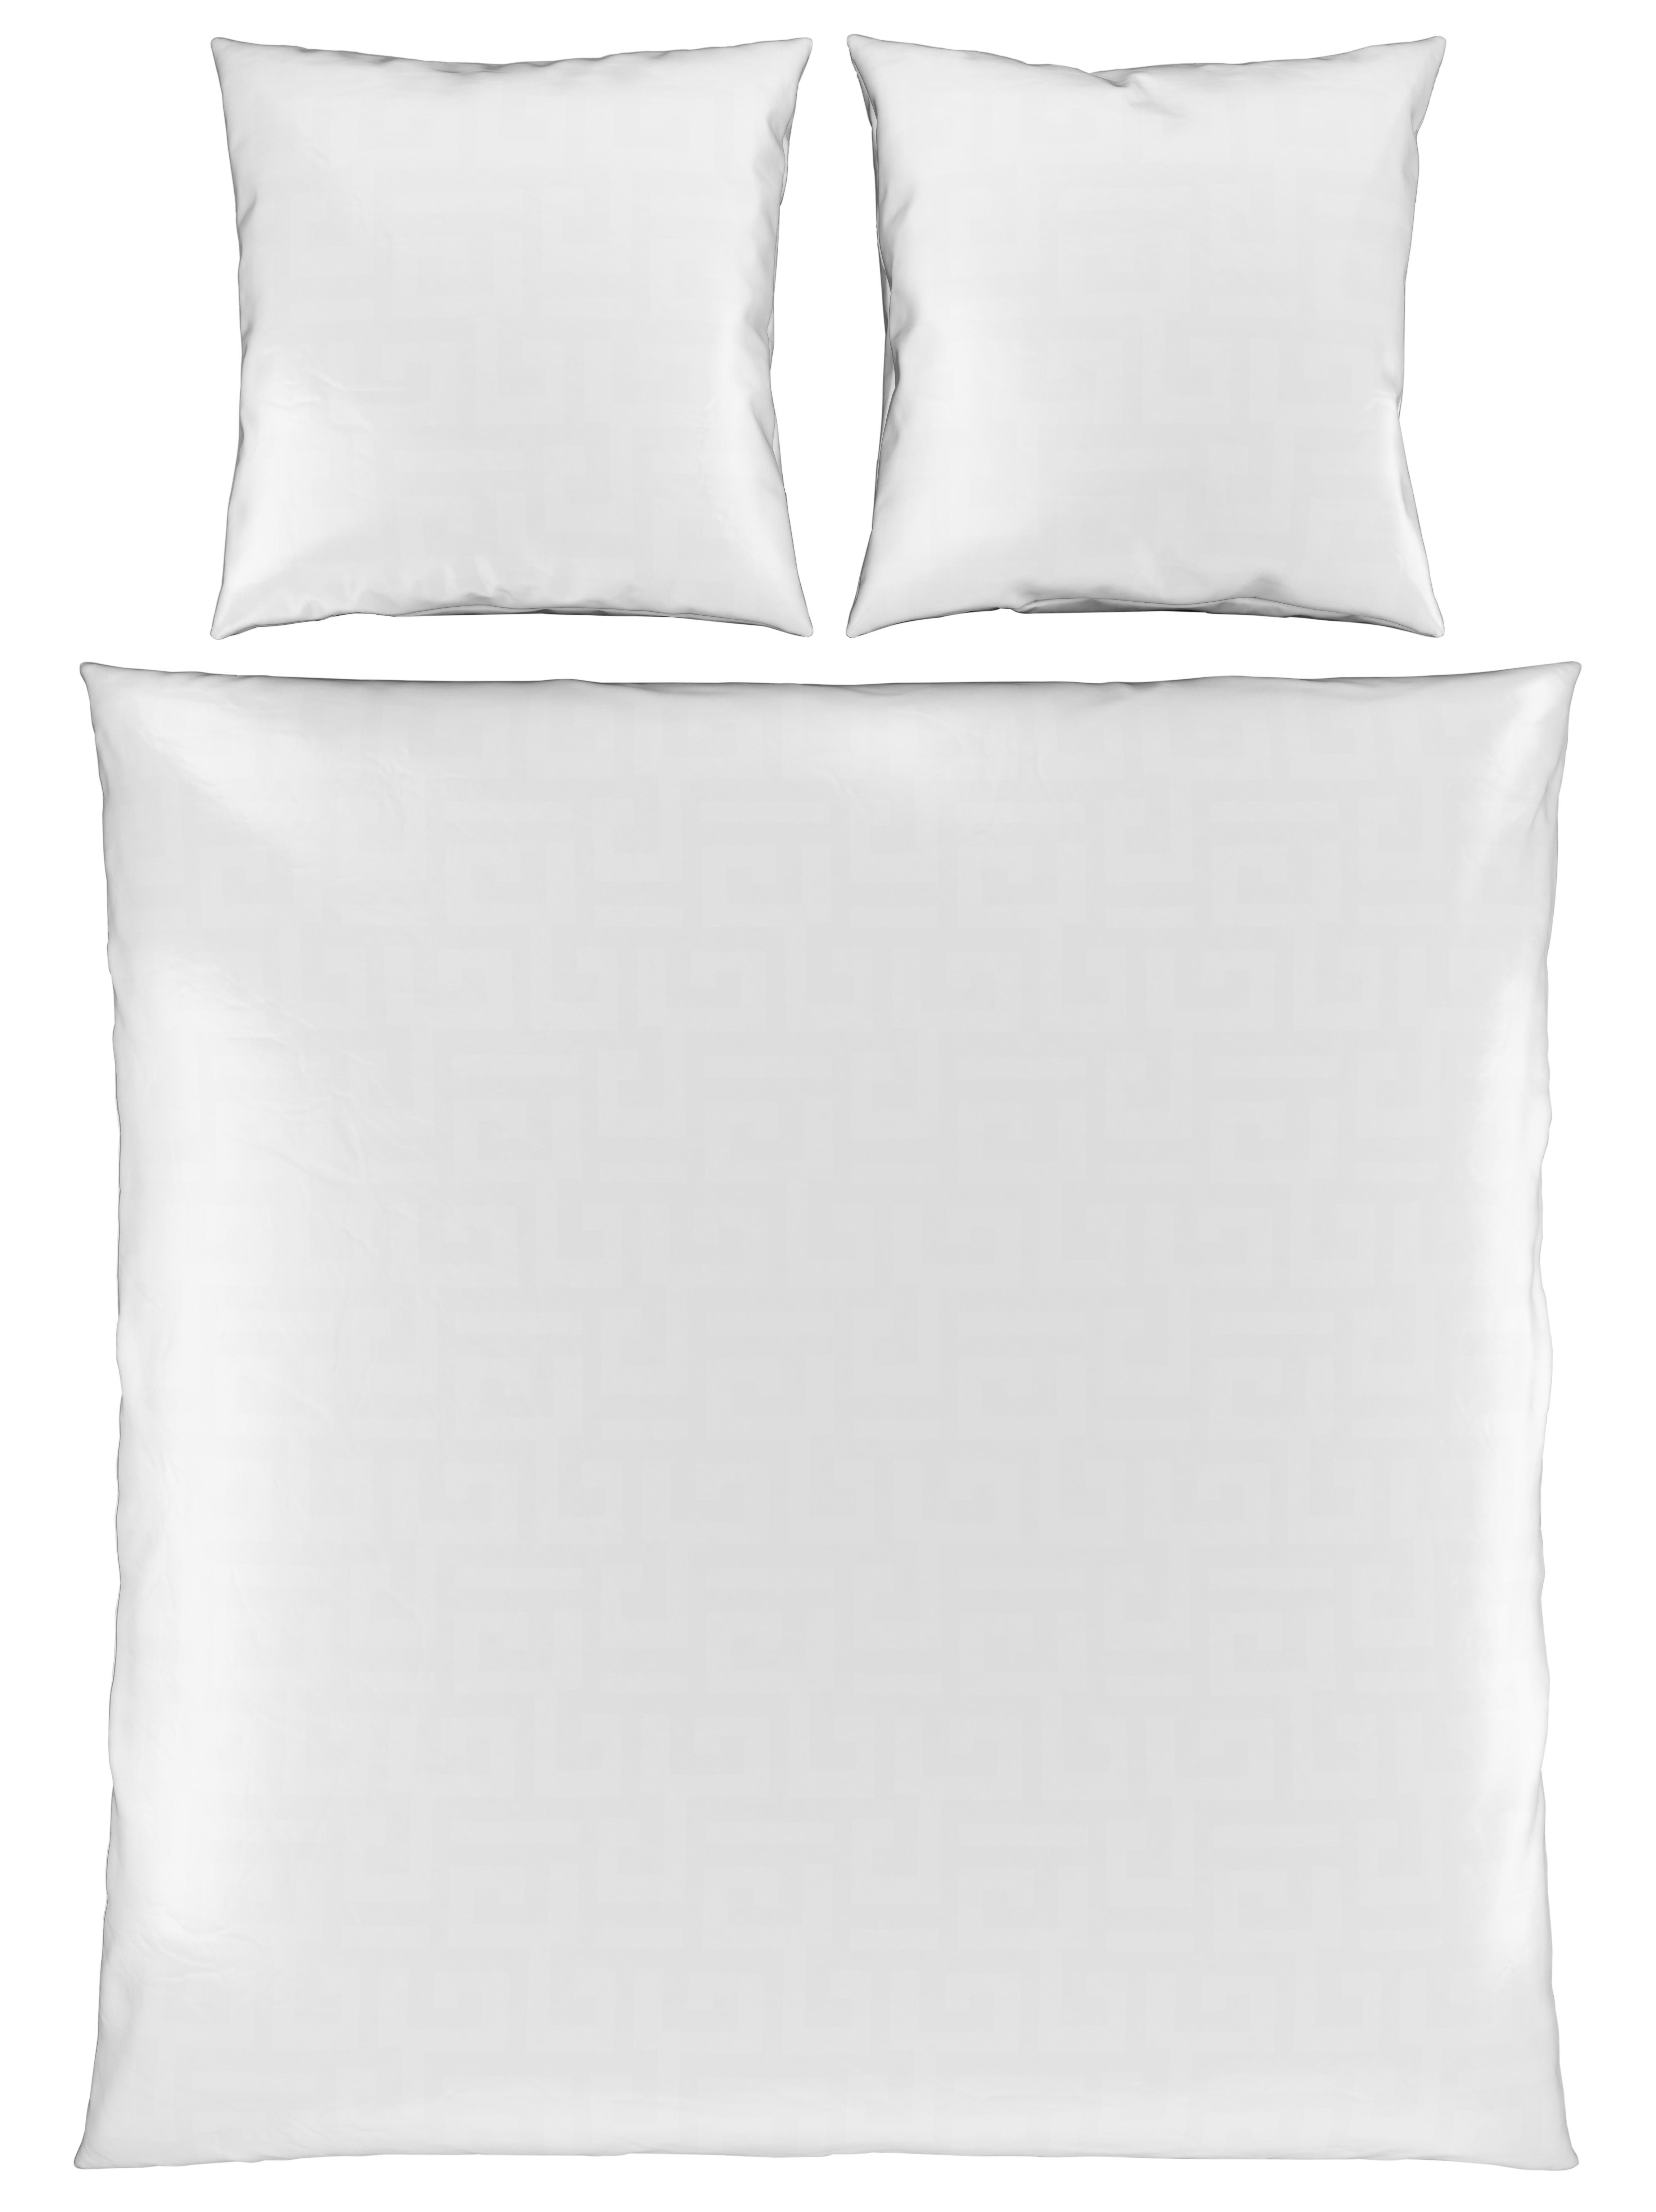 WENDEBETTWÄSCHE Satin  - Weiß, Basics, Textil (200/200cm) - Bio:Vio